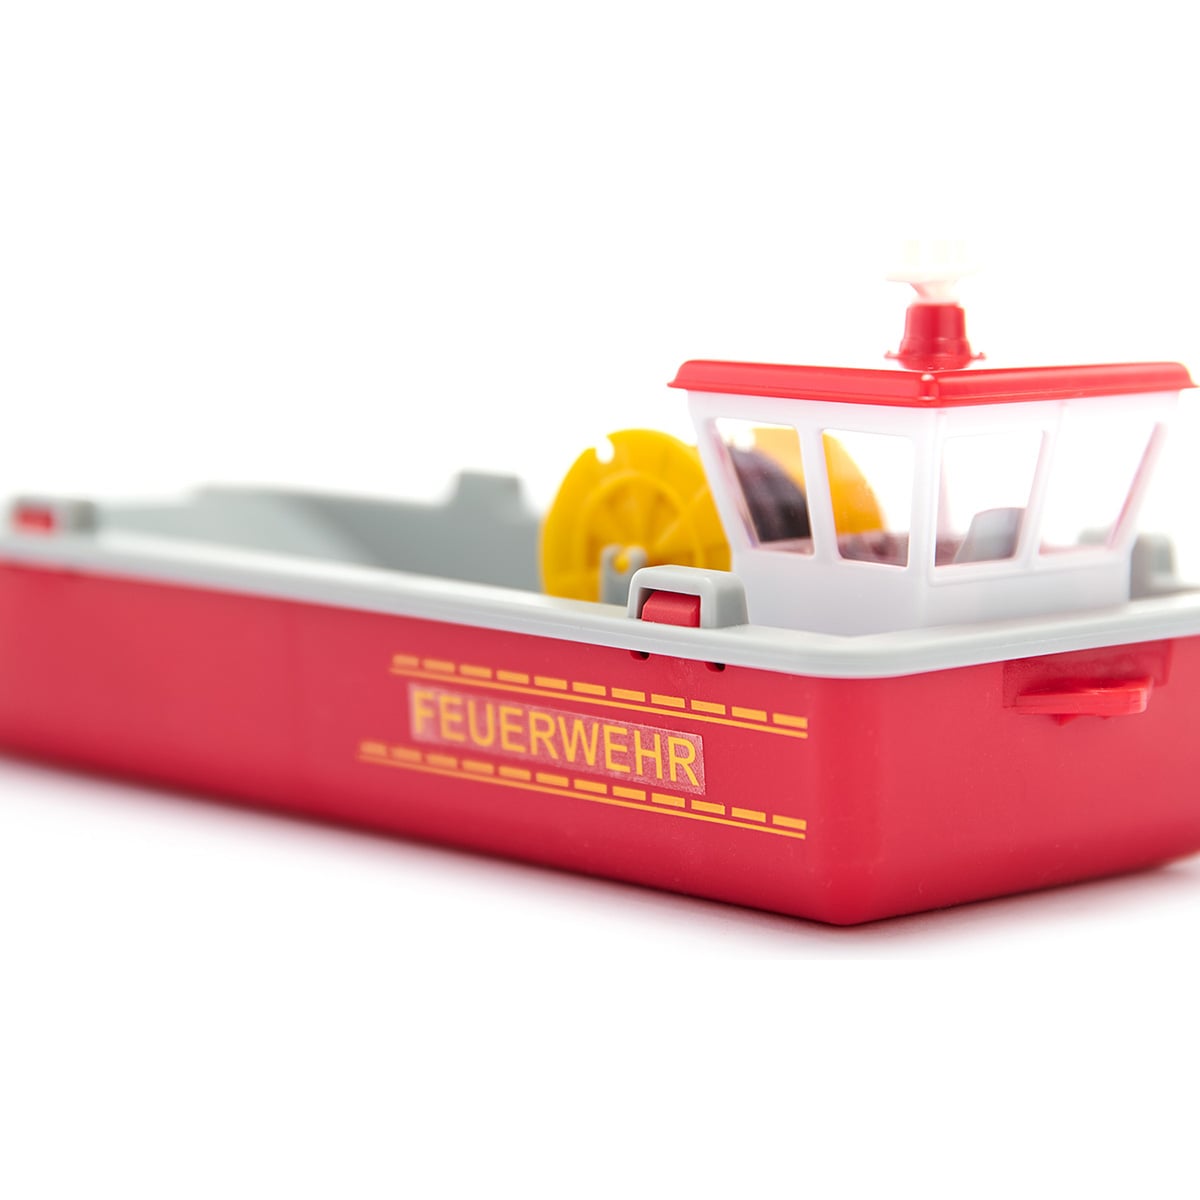 消防艇: ボーネルンド オンラインショップ。世界中の知育玩具など 